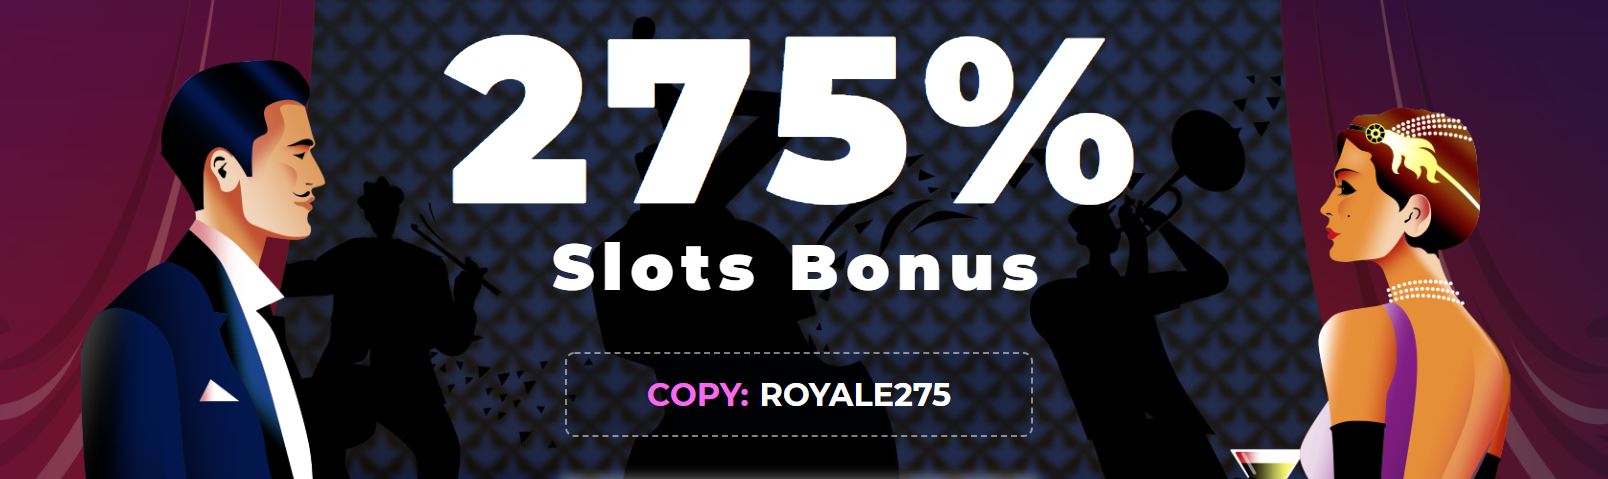 el royale casino bonus codes 2021